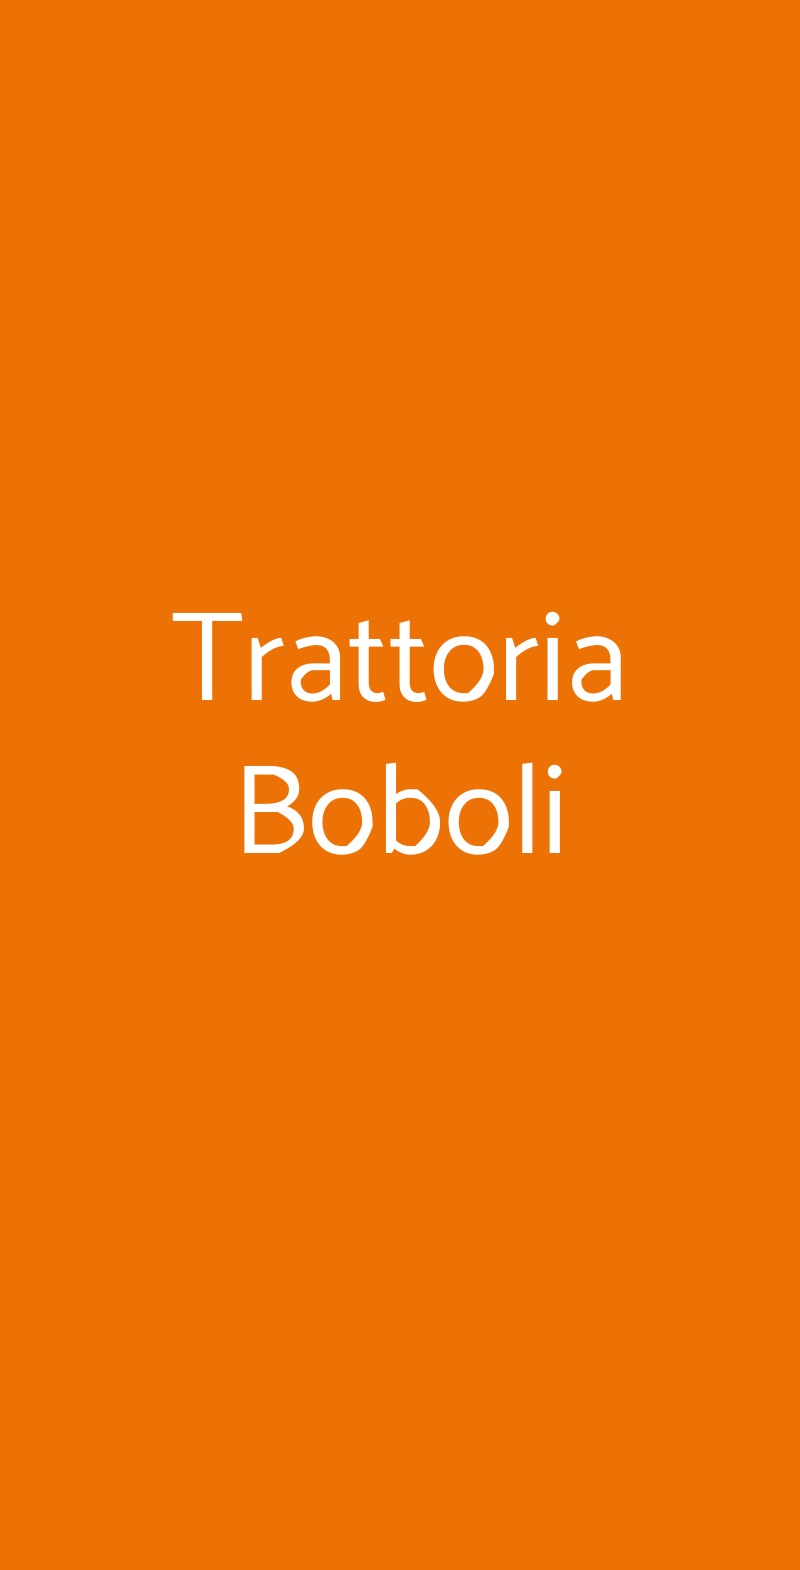 Trattoria Boboli Firenze menù 1 pagina